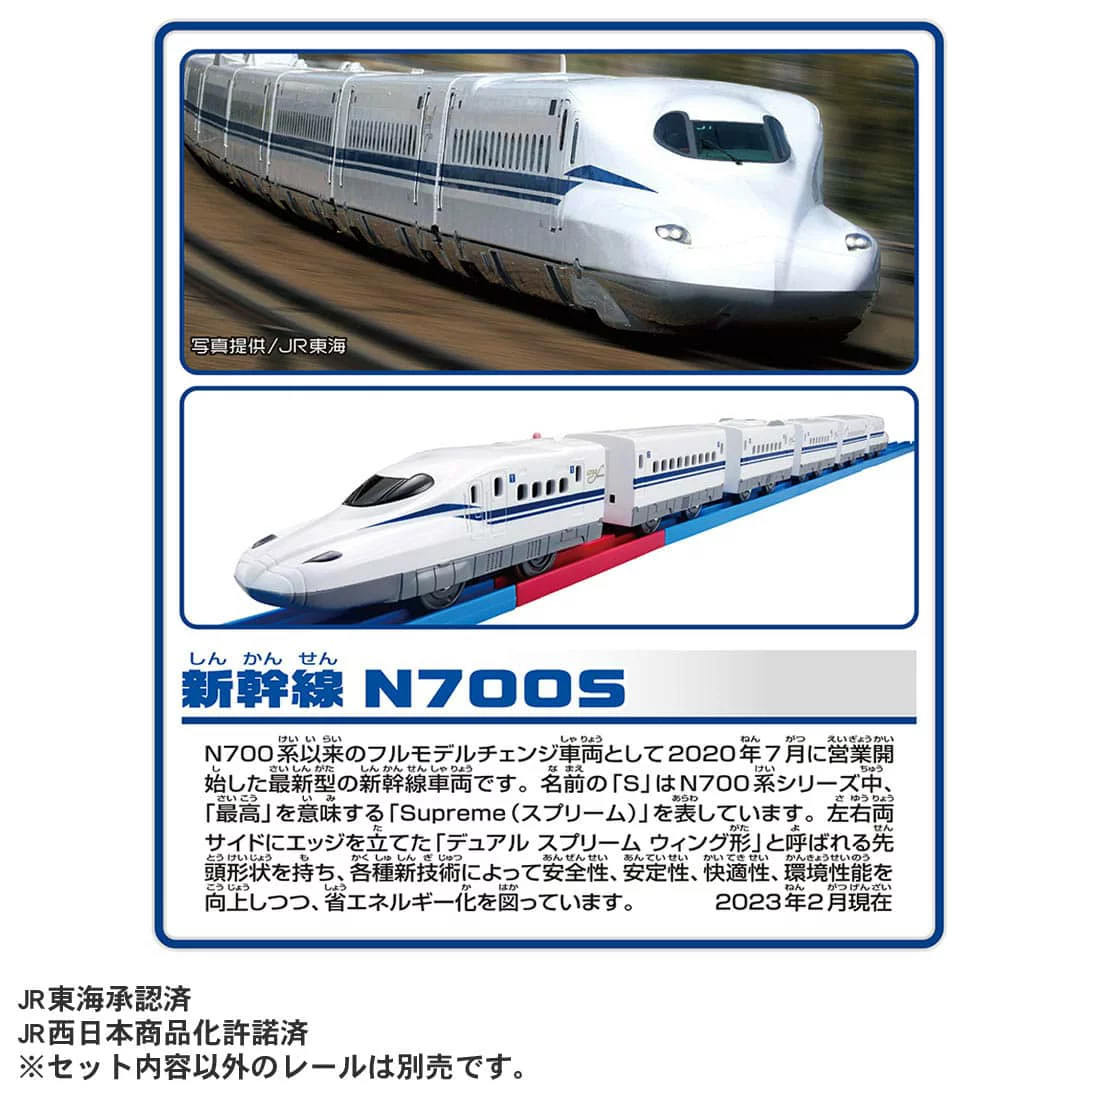 ☆勳寶玩具舖【現貨】TAKARA TOMY 多美列車N700S 新幹線變速列車組6節 